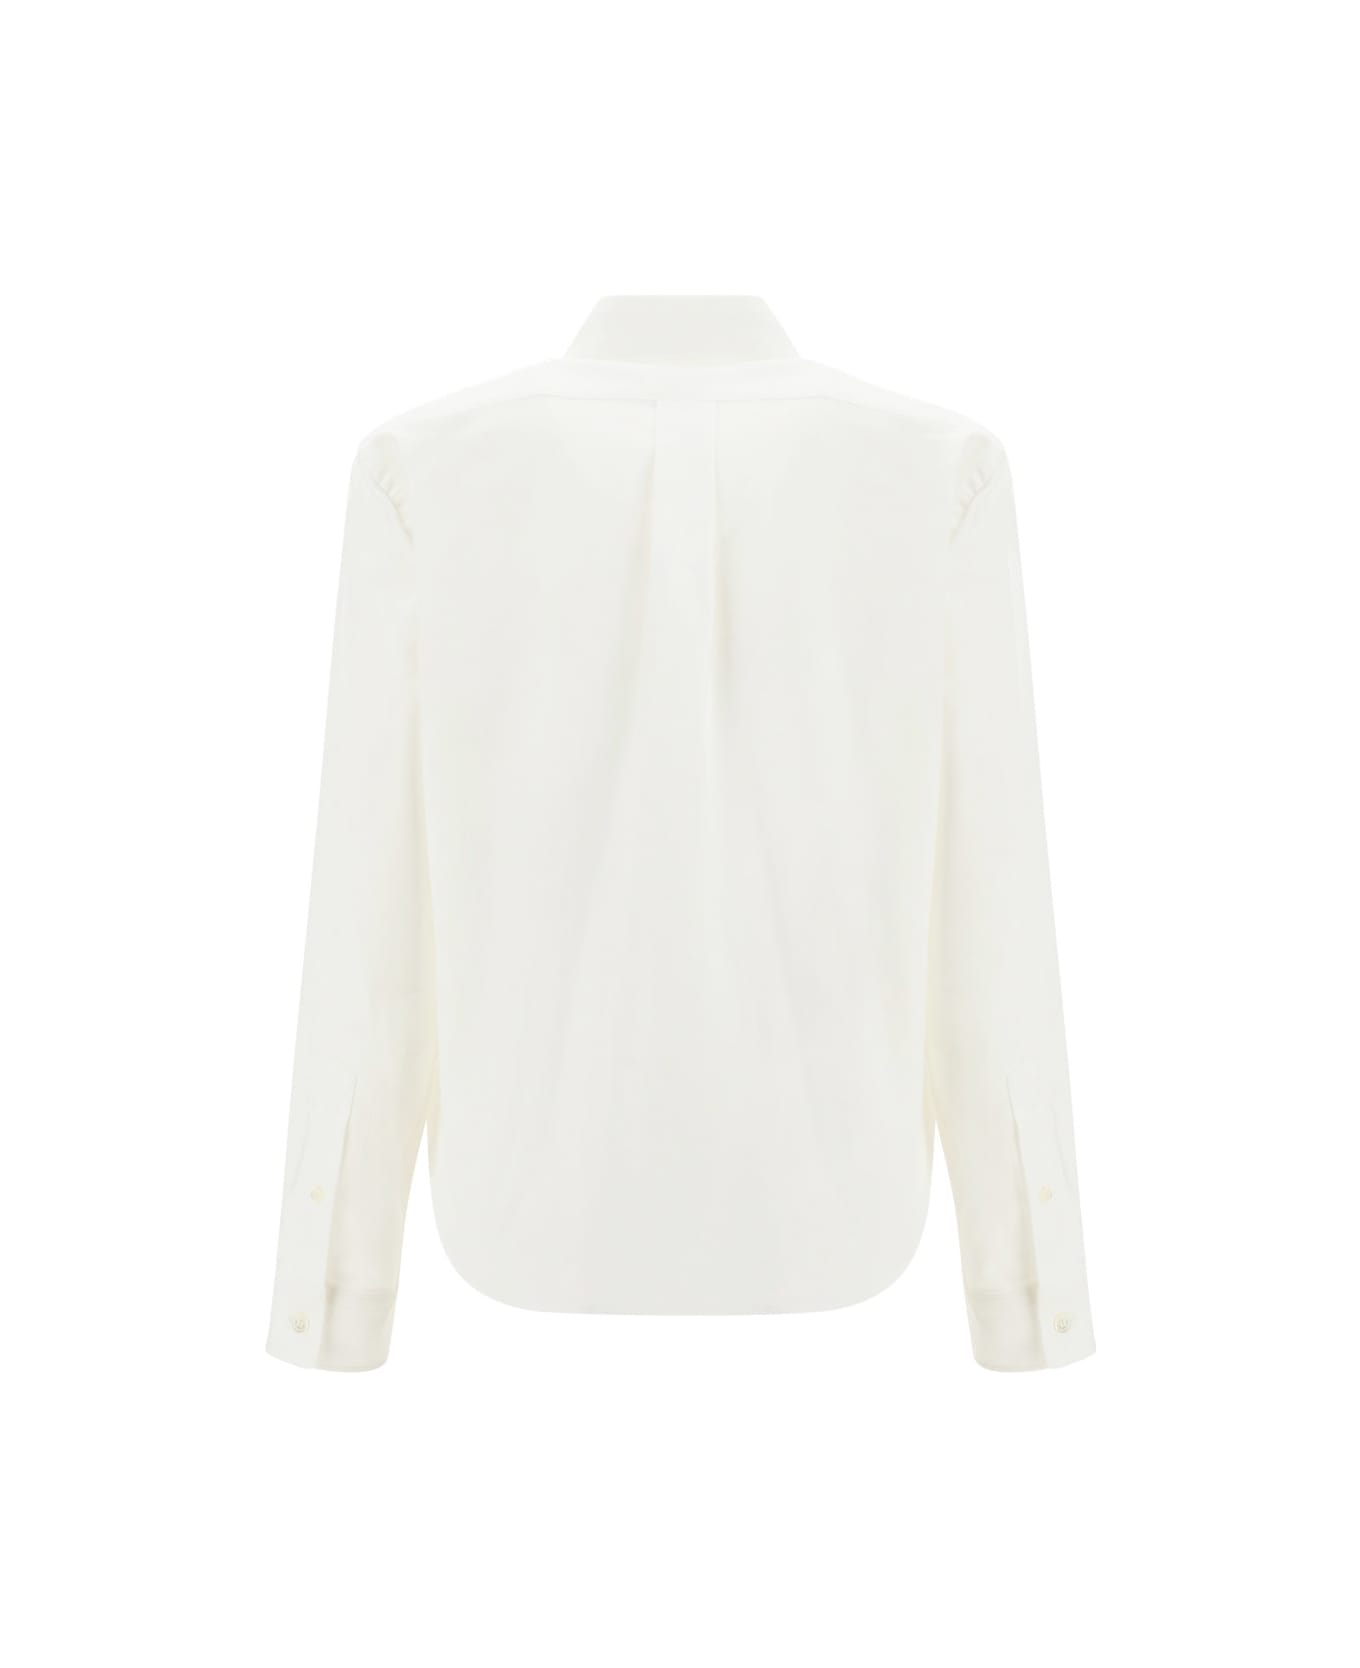 Kenzo Ml Shirt - White